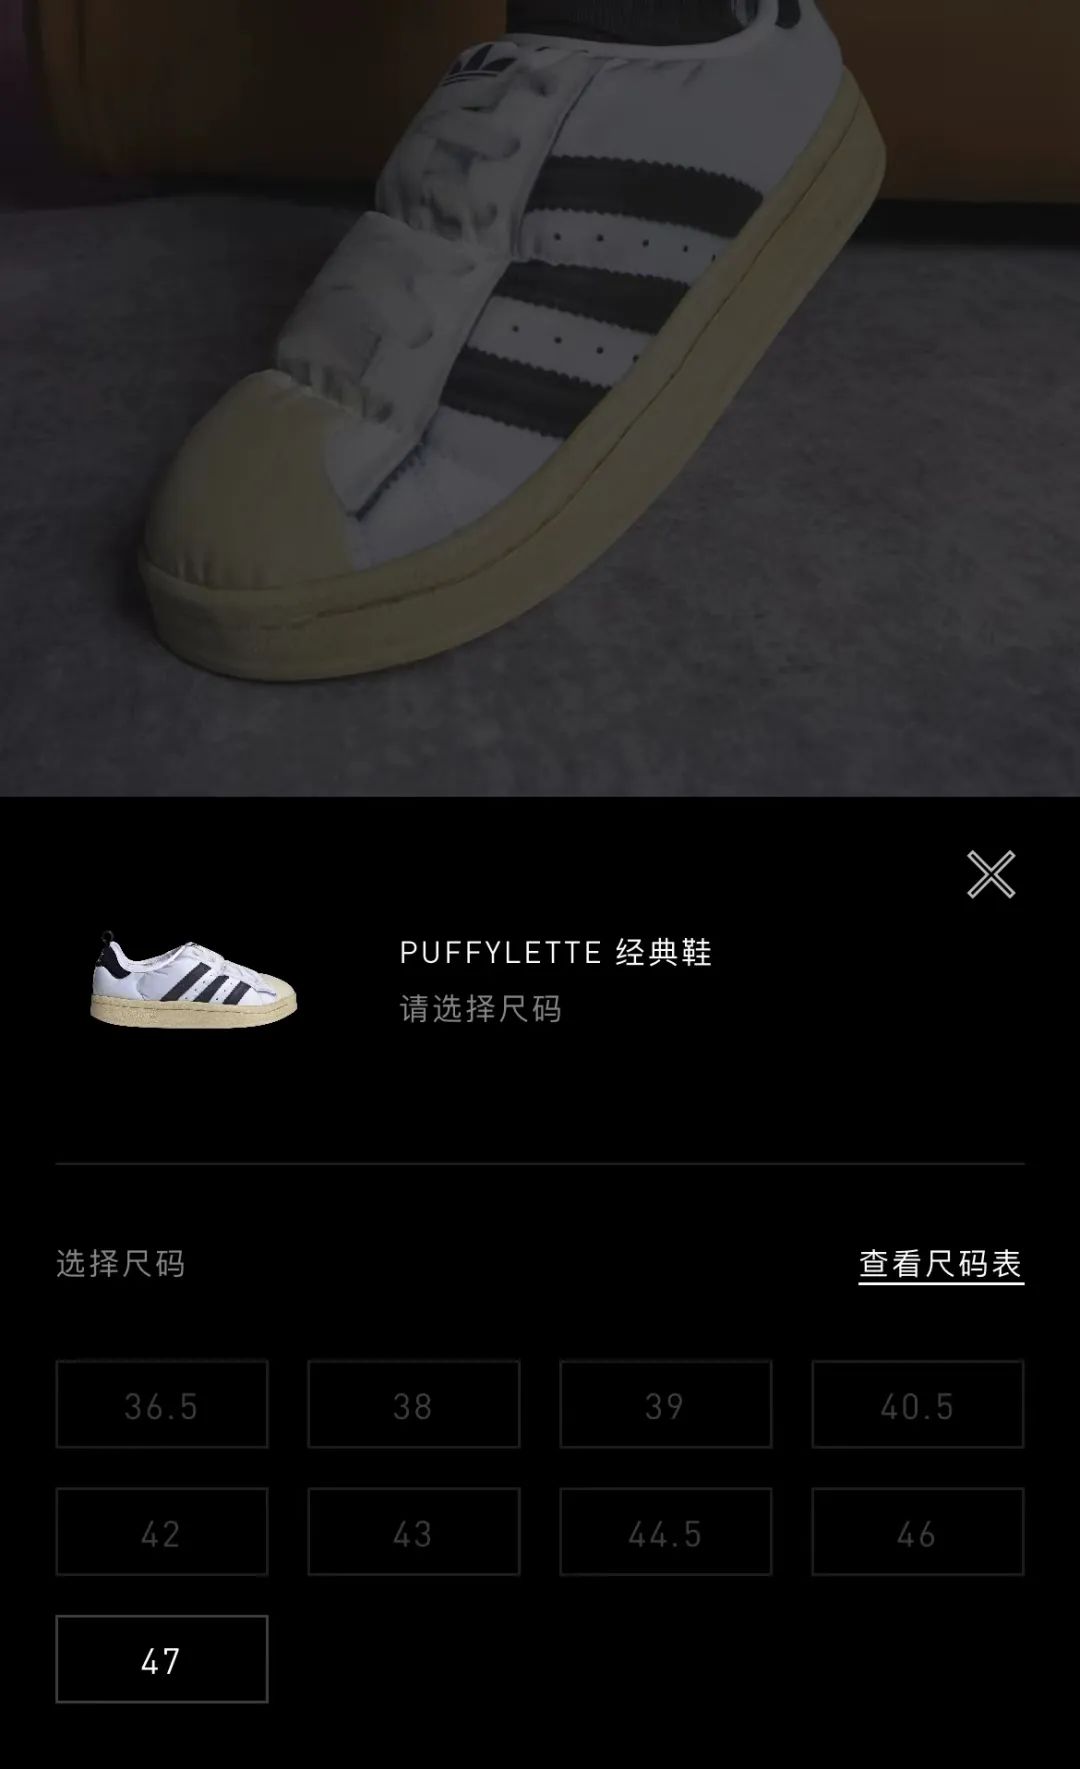 降价了！市价1000+的阿迪「面包鞋」中国开始补货发售...-Supreme情报网